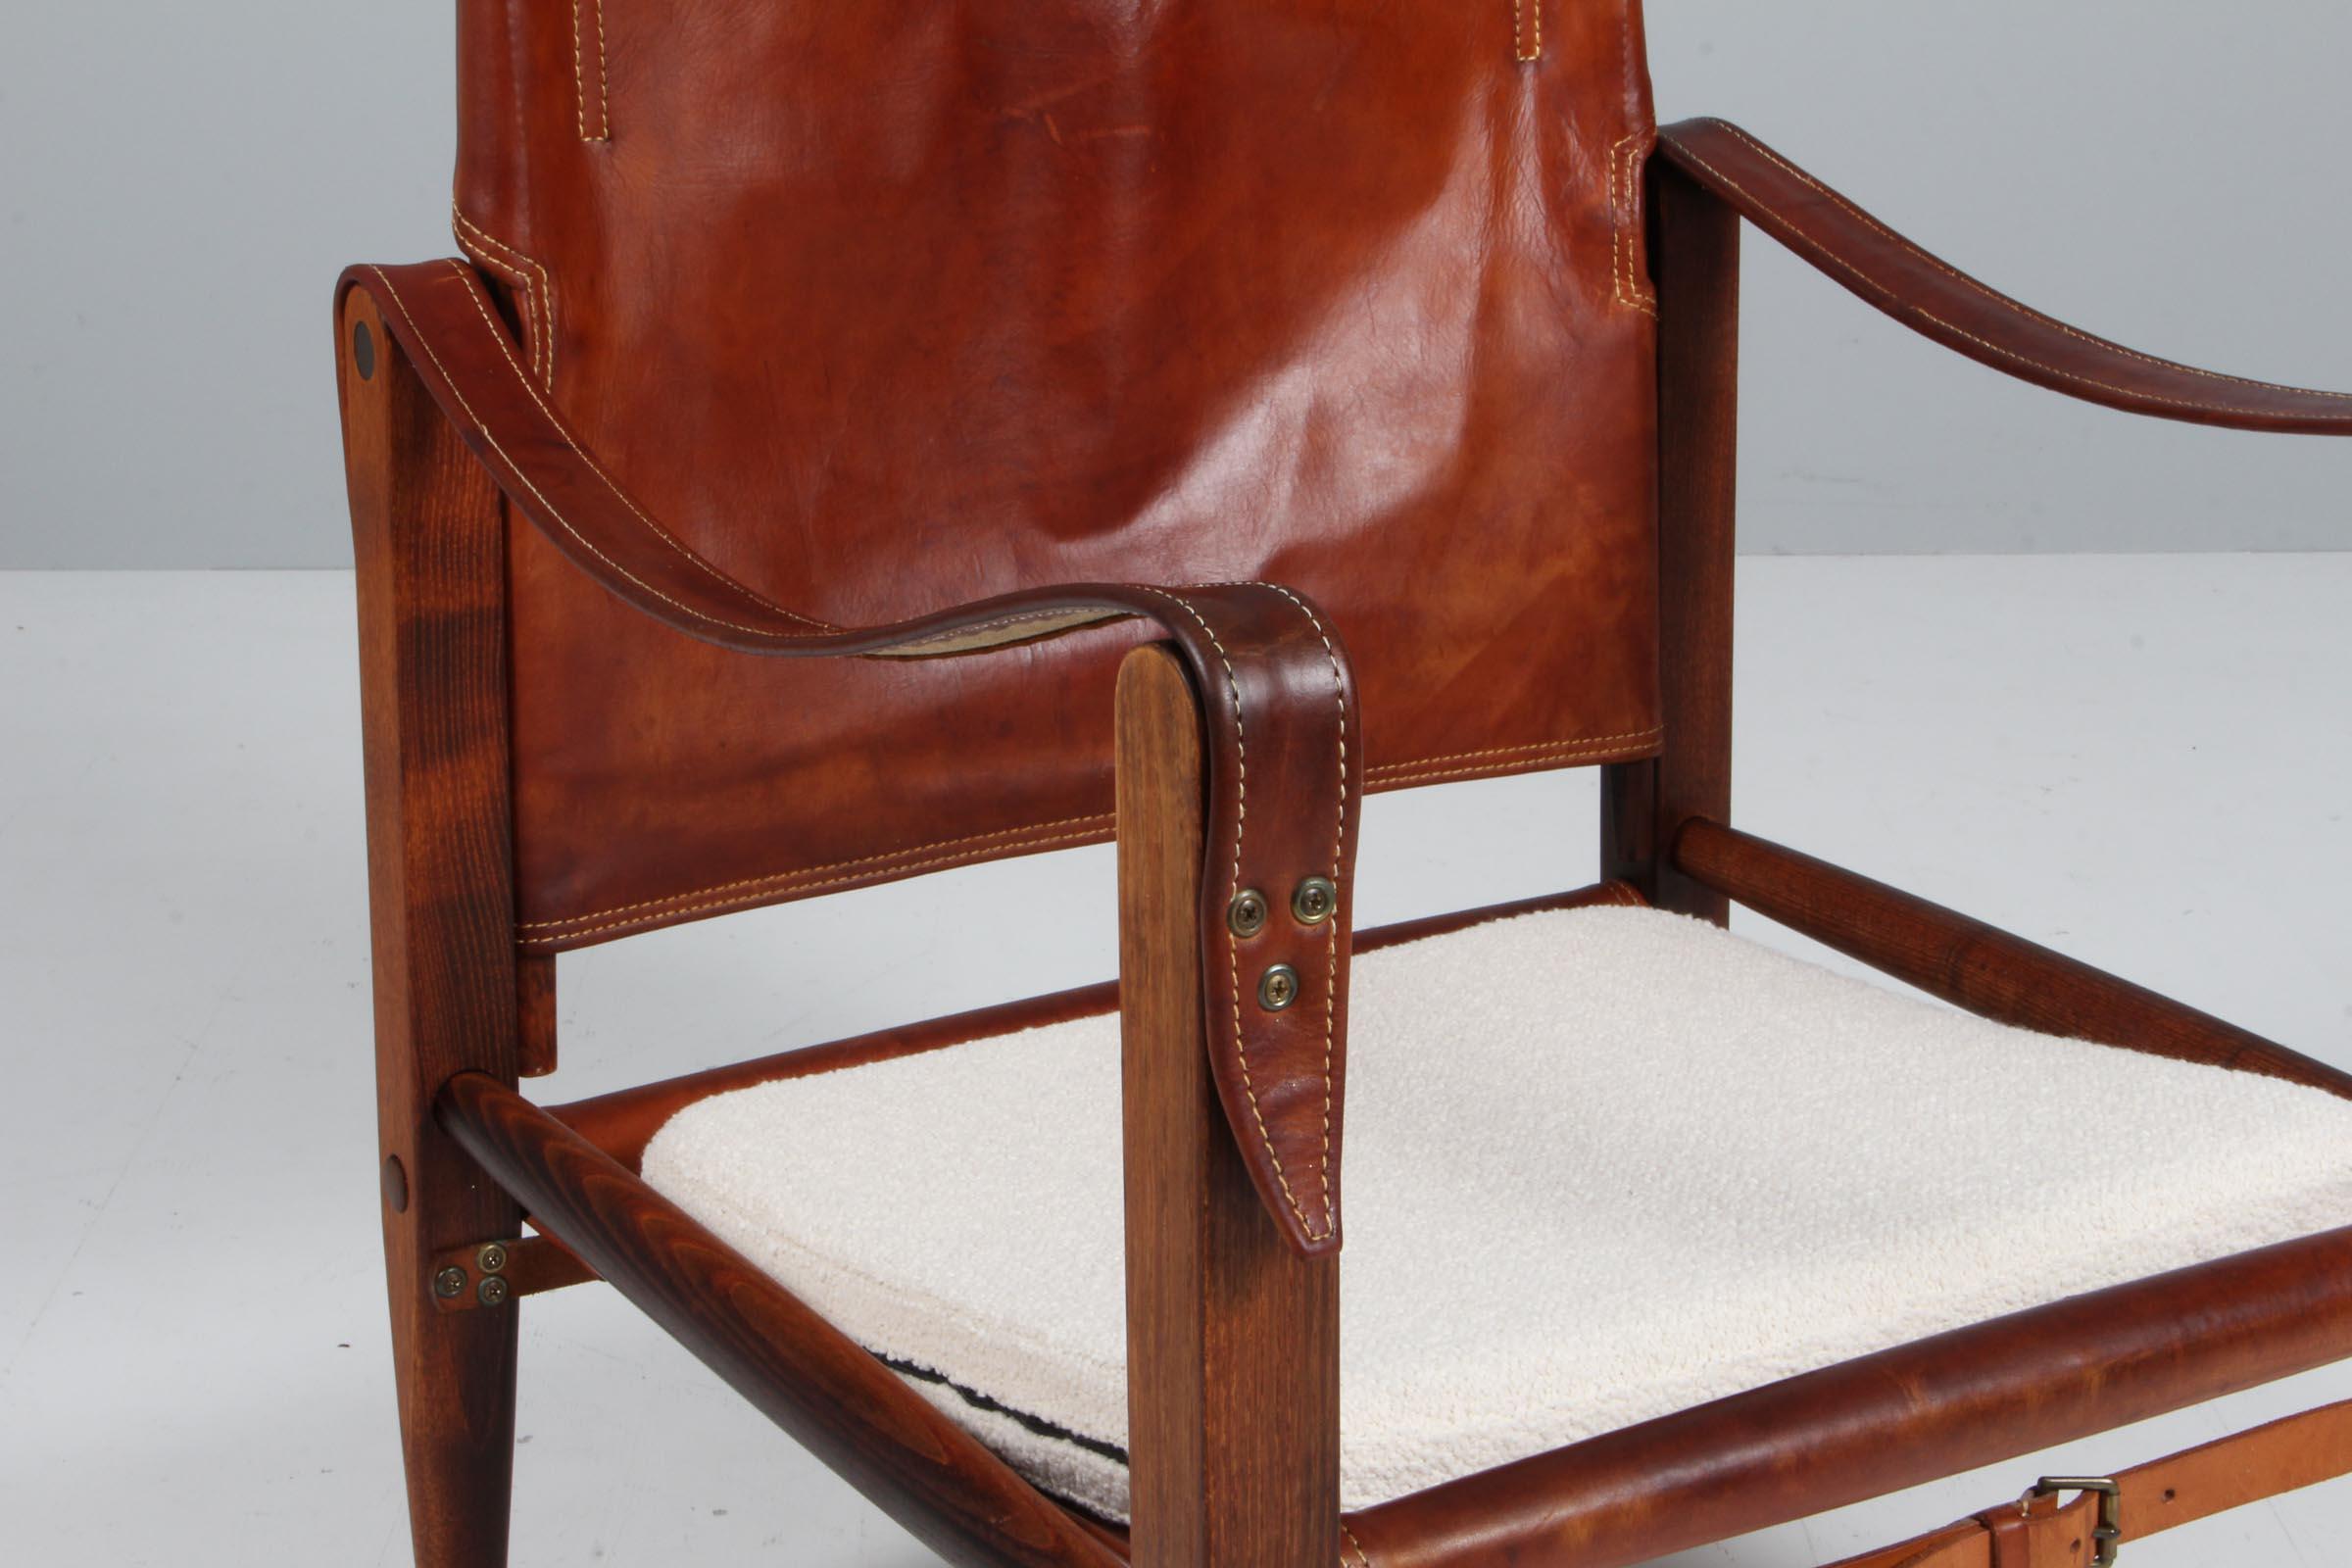 safari chair leather